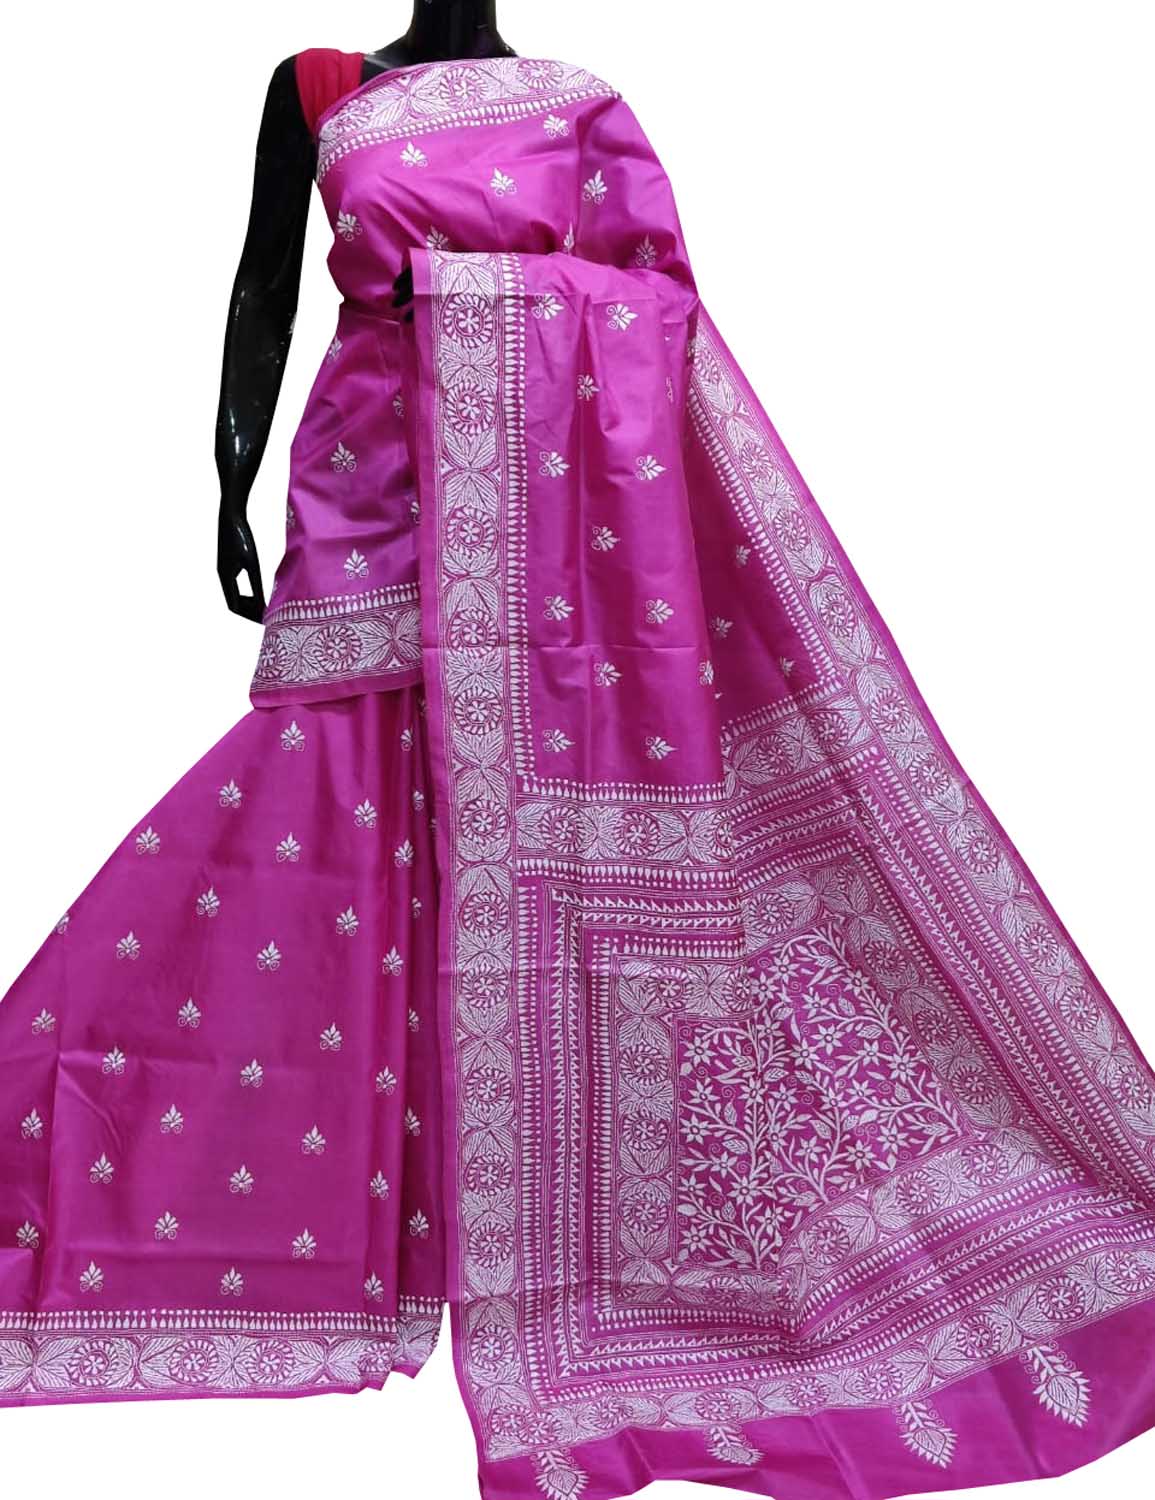 Exquisite Pink Kantha Work Silk Saree: Hand Embroidered Elegance - Luxurion World